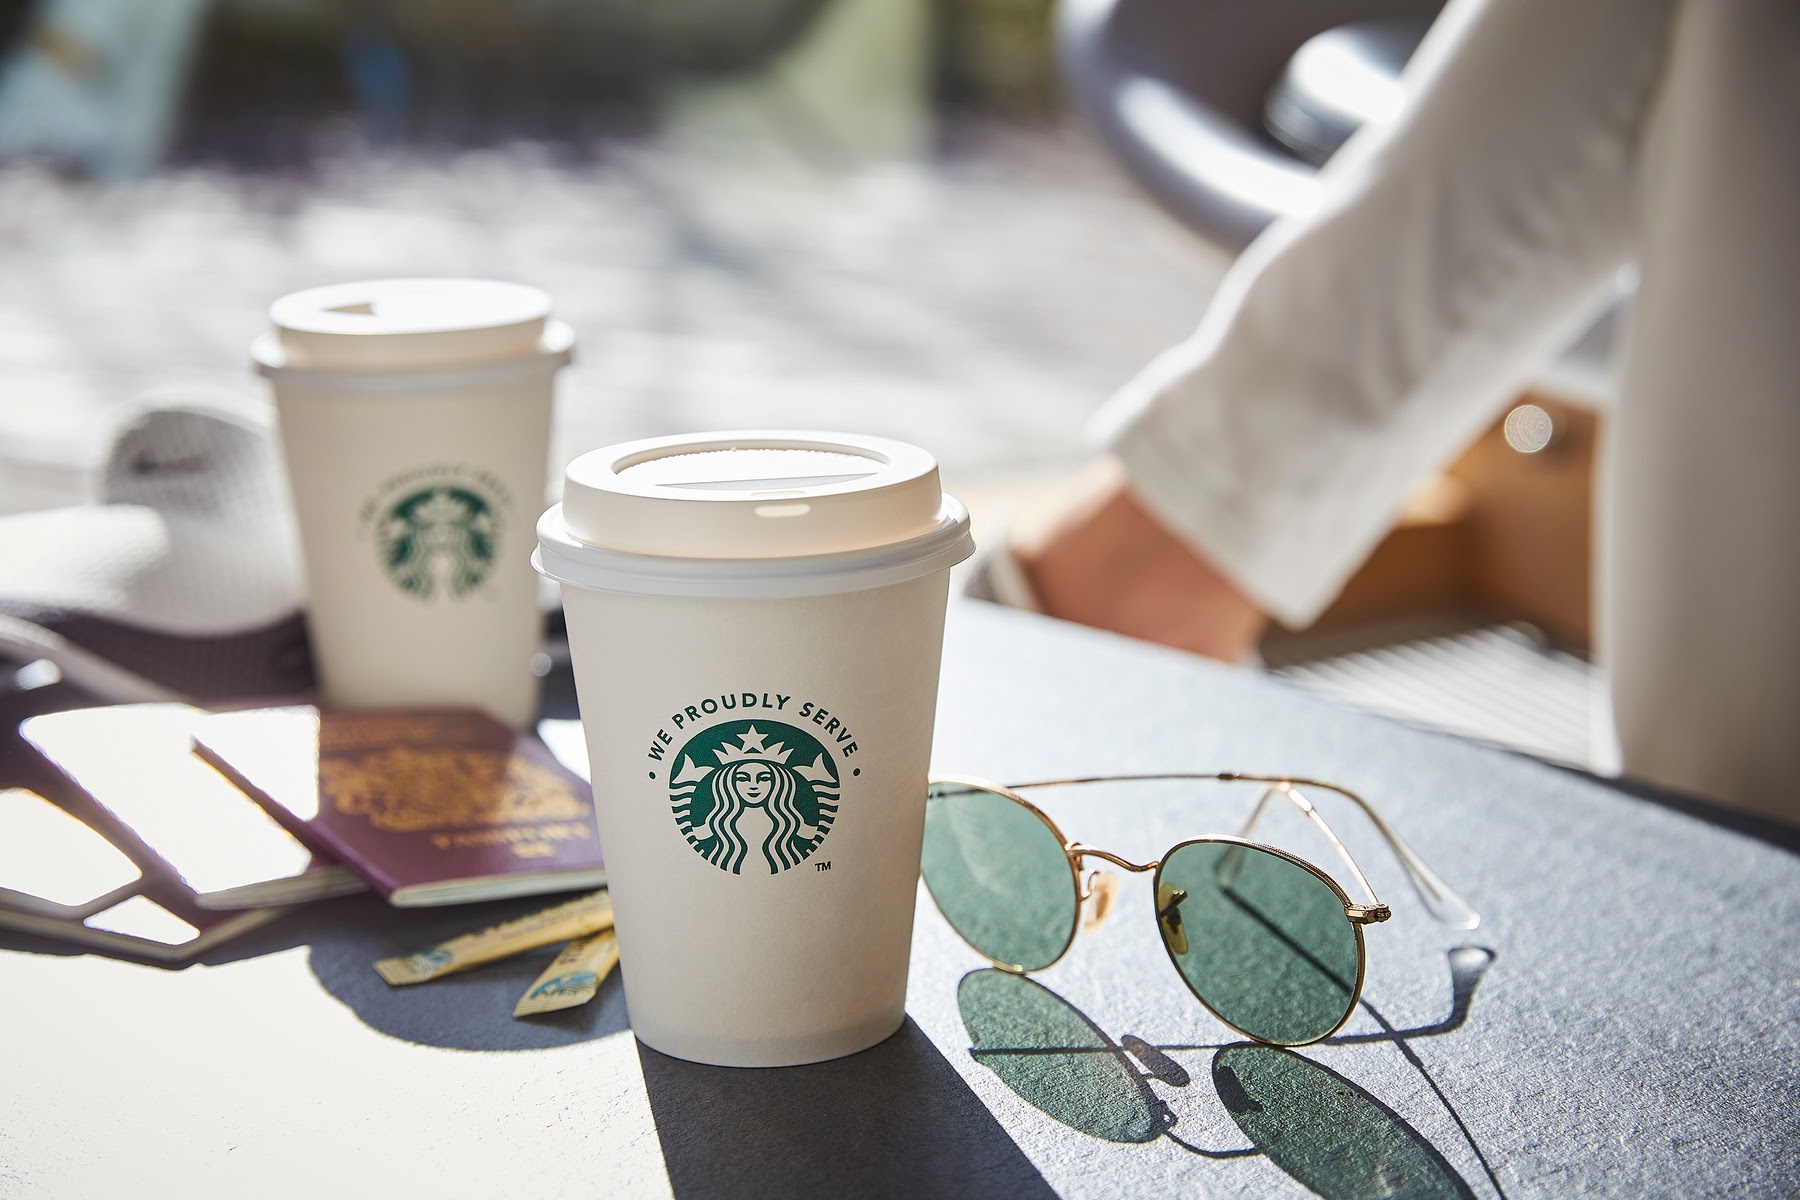 เนสท์เล่ โพรเฟชชันนัล เปิดตัว We Proudly Serve Starbucks คอฟฟี่โซลูชั่น เจาะกลุ่มออฟฟิศและองค์กรต่าง ๆ ที่มีจุดบริการเครื่องดื่มในประเทศไทย